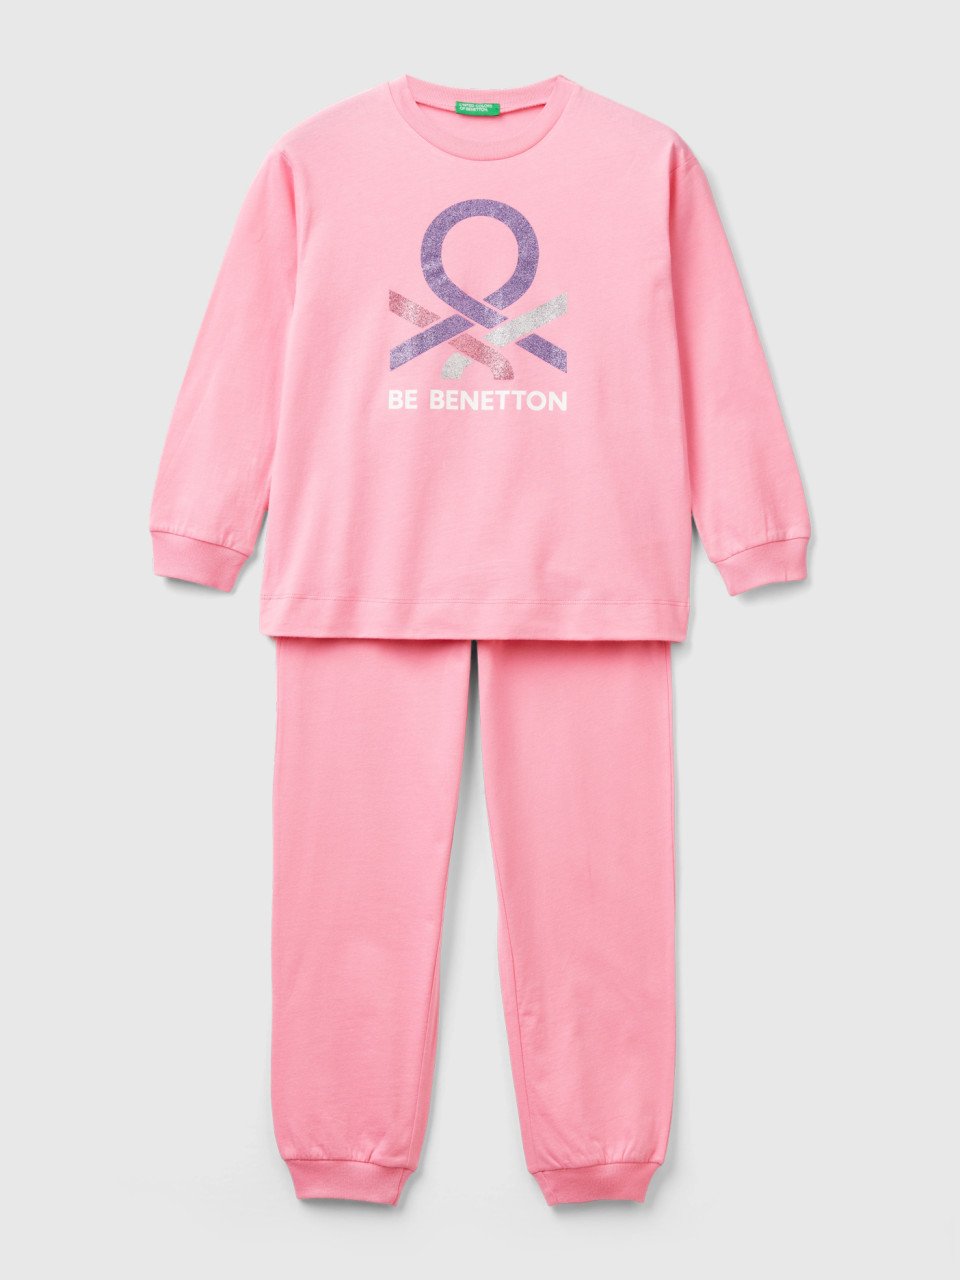 Benetton, Langer Pyjama In Rosa Mit Glitzerlogo, Pink, female